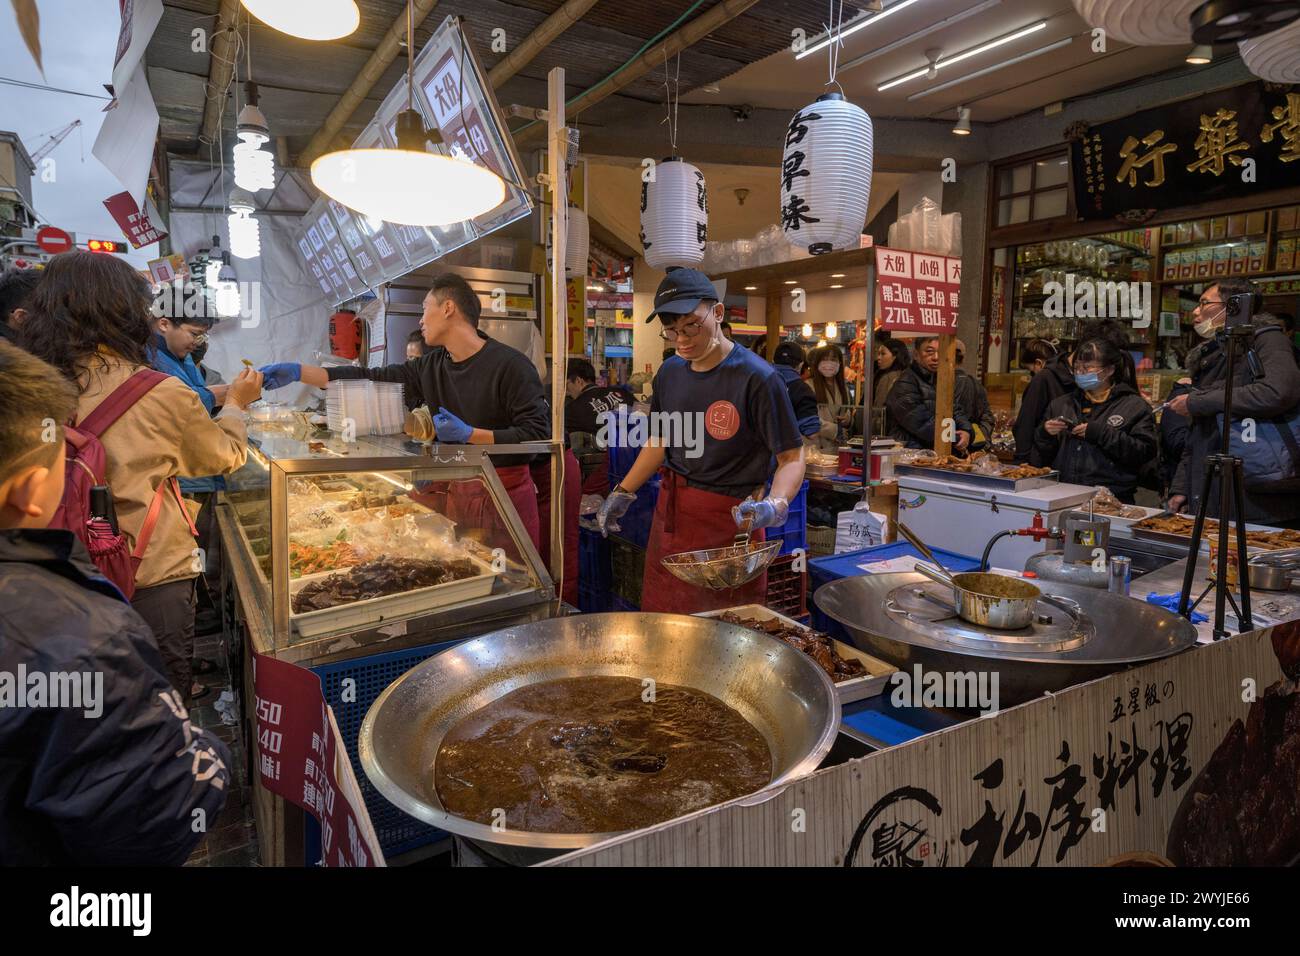 Ein lebhafter und geschäftiger Street Food Markt mit verschiedenen Ständen, die lokale asiatische Küche servieren und das Wesen des täglichen Lebens einfangen Stockfoto